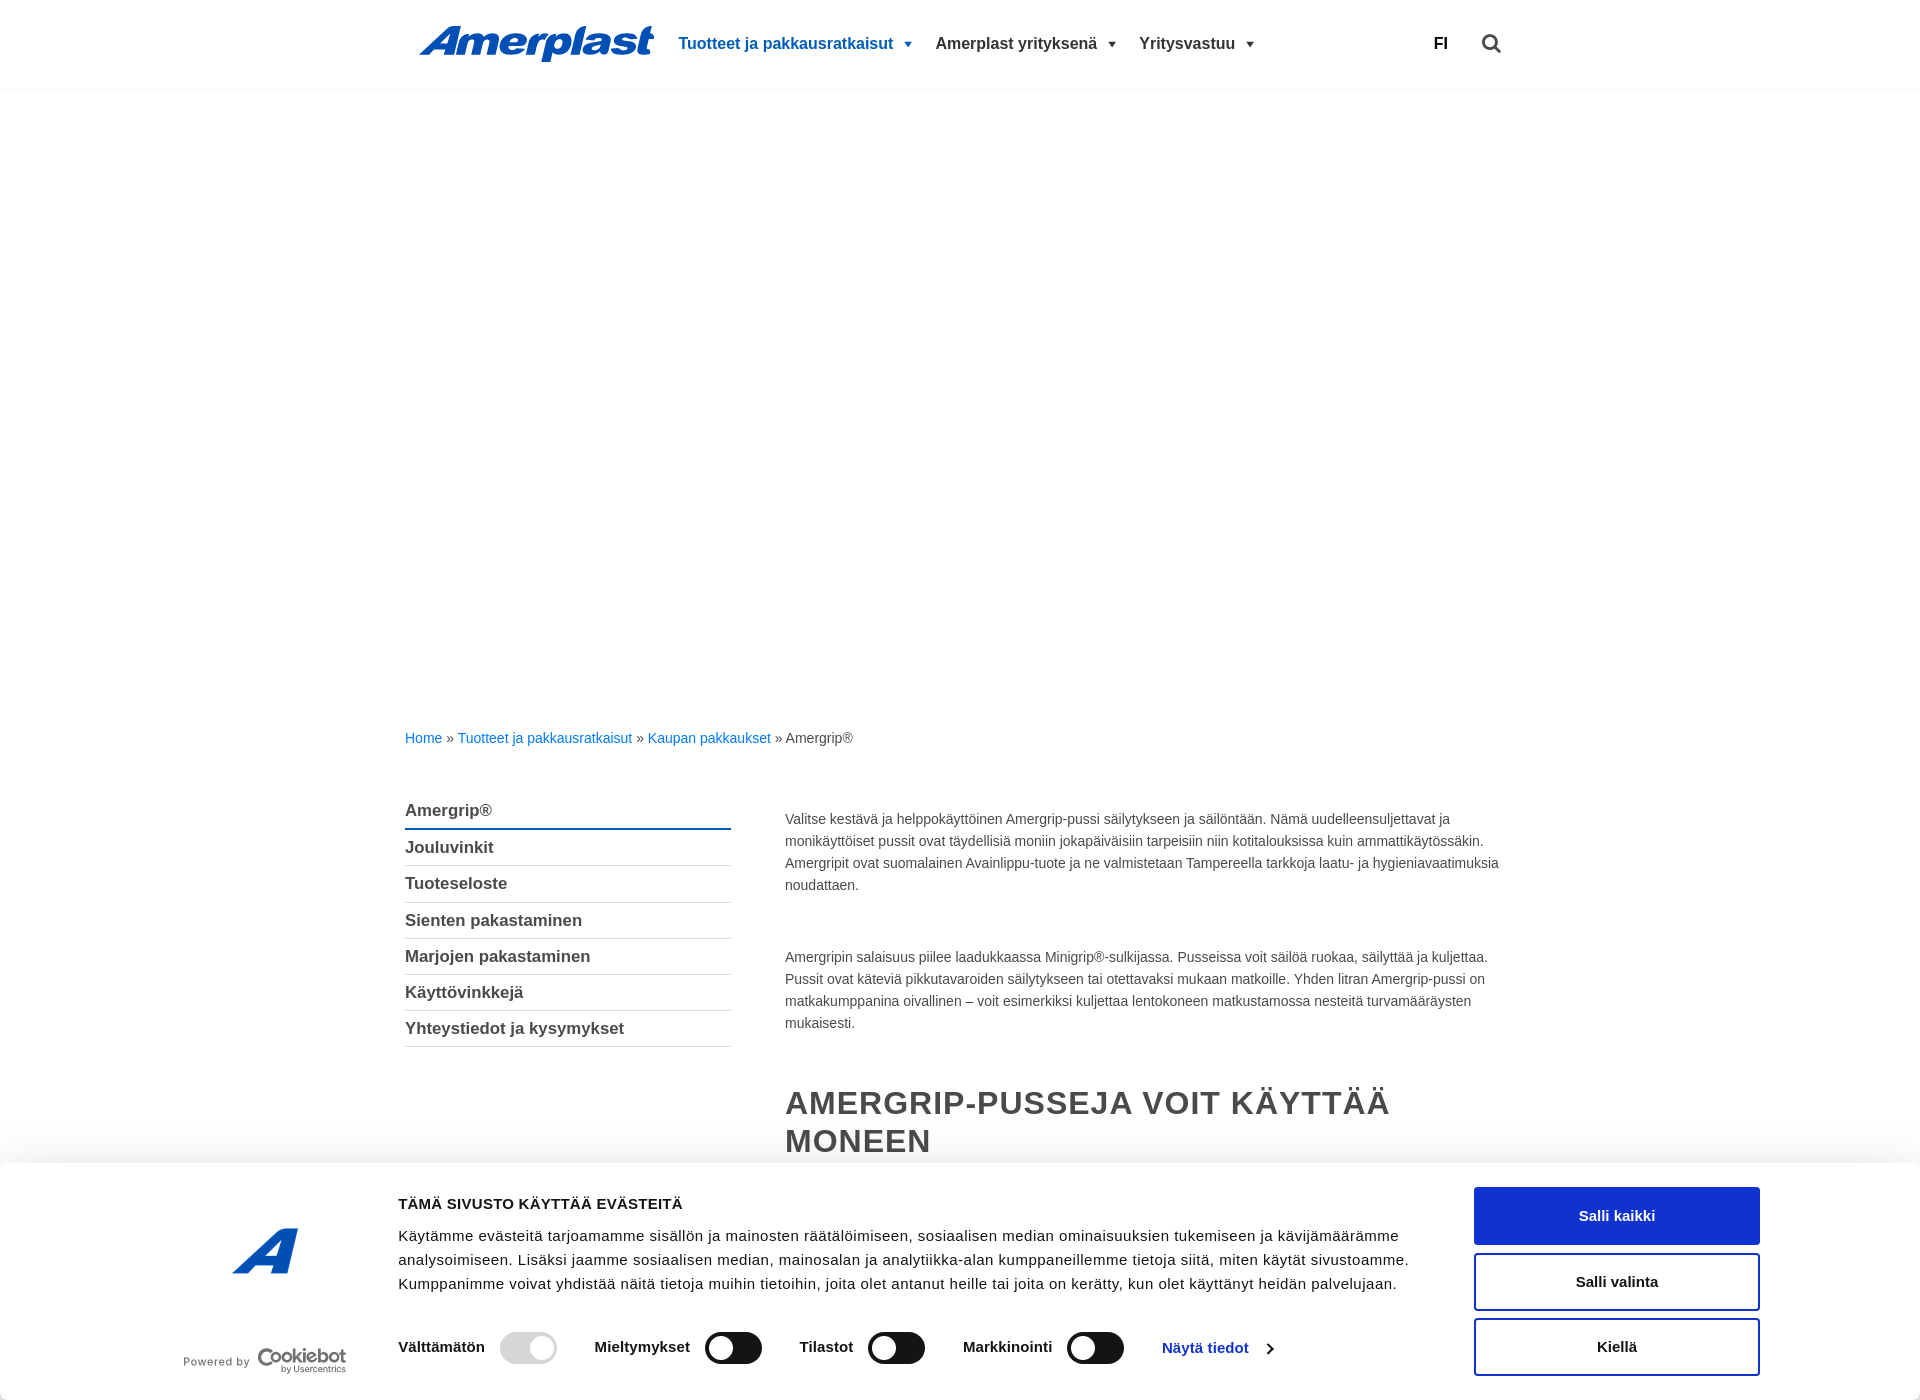 Näyttökuva amergrip.fi